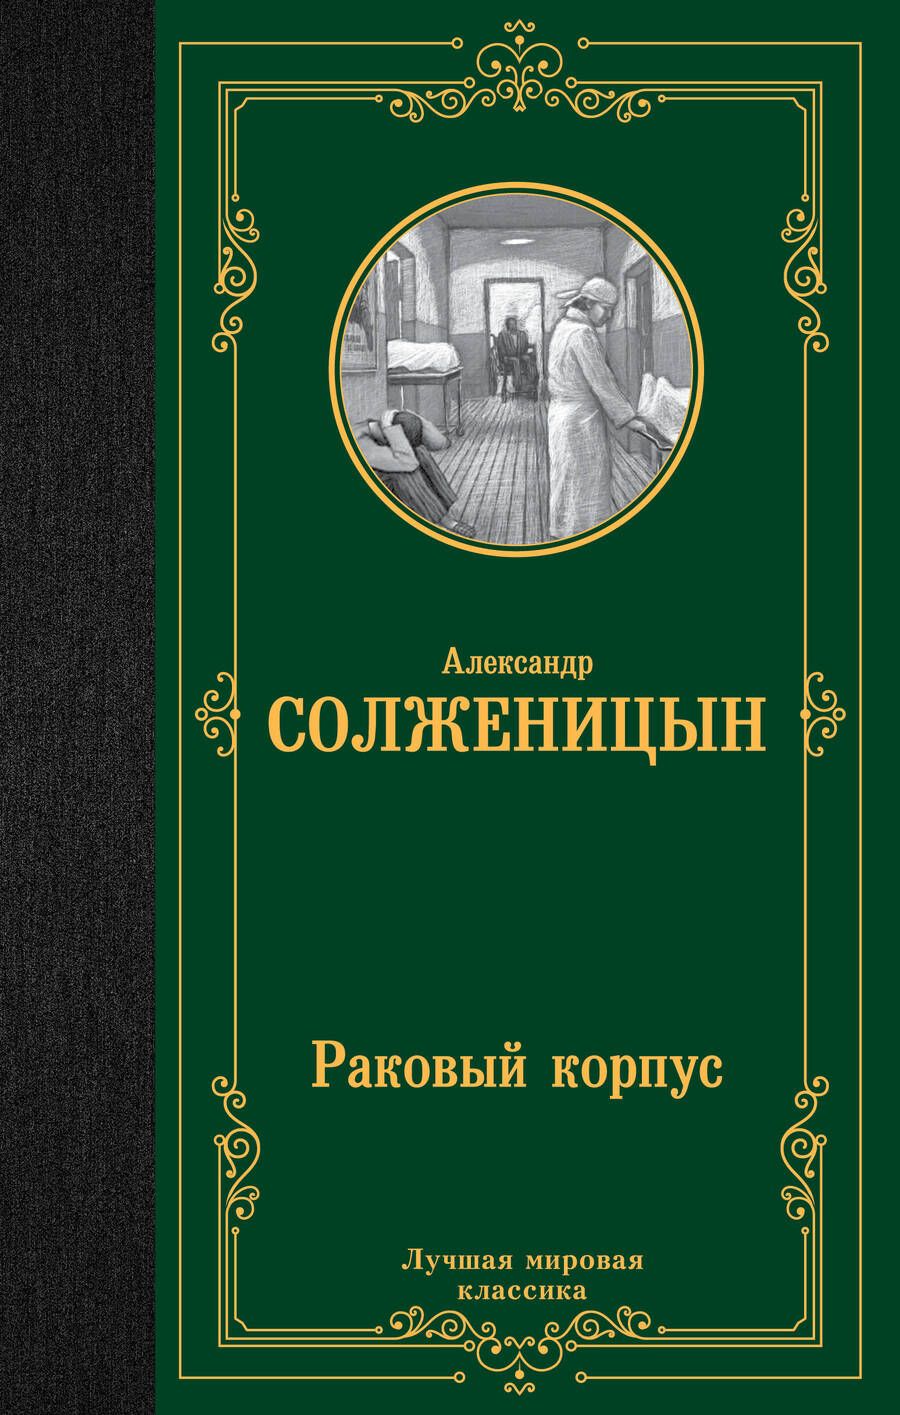 Обложка книги "Солженицын: Раковый корпус"